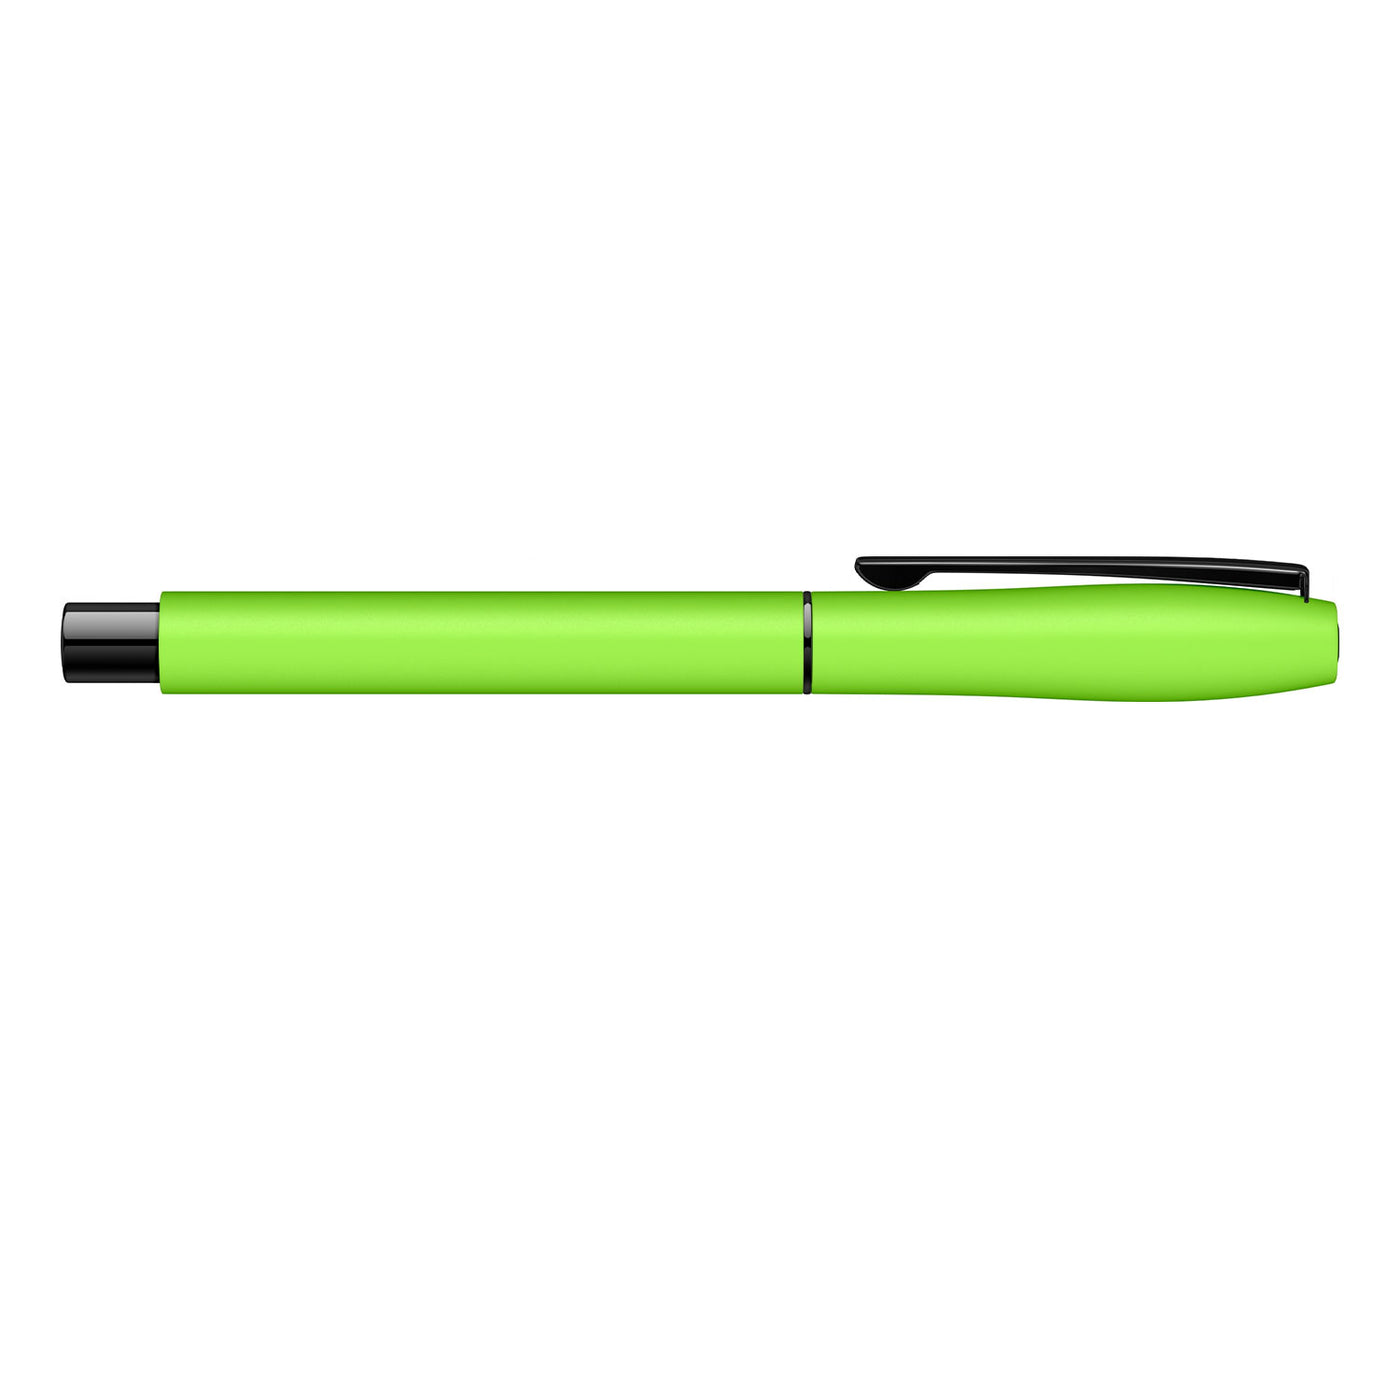 Scrikss Carnaval Roller Ball Pen - Light Green Neon BT 5